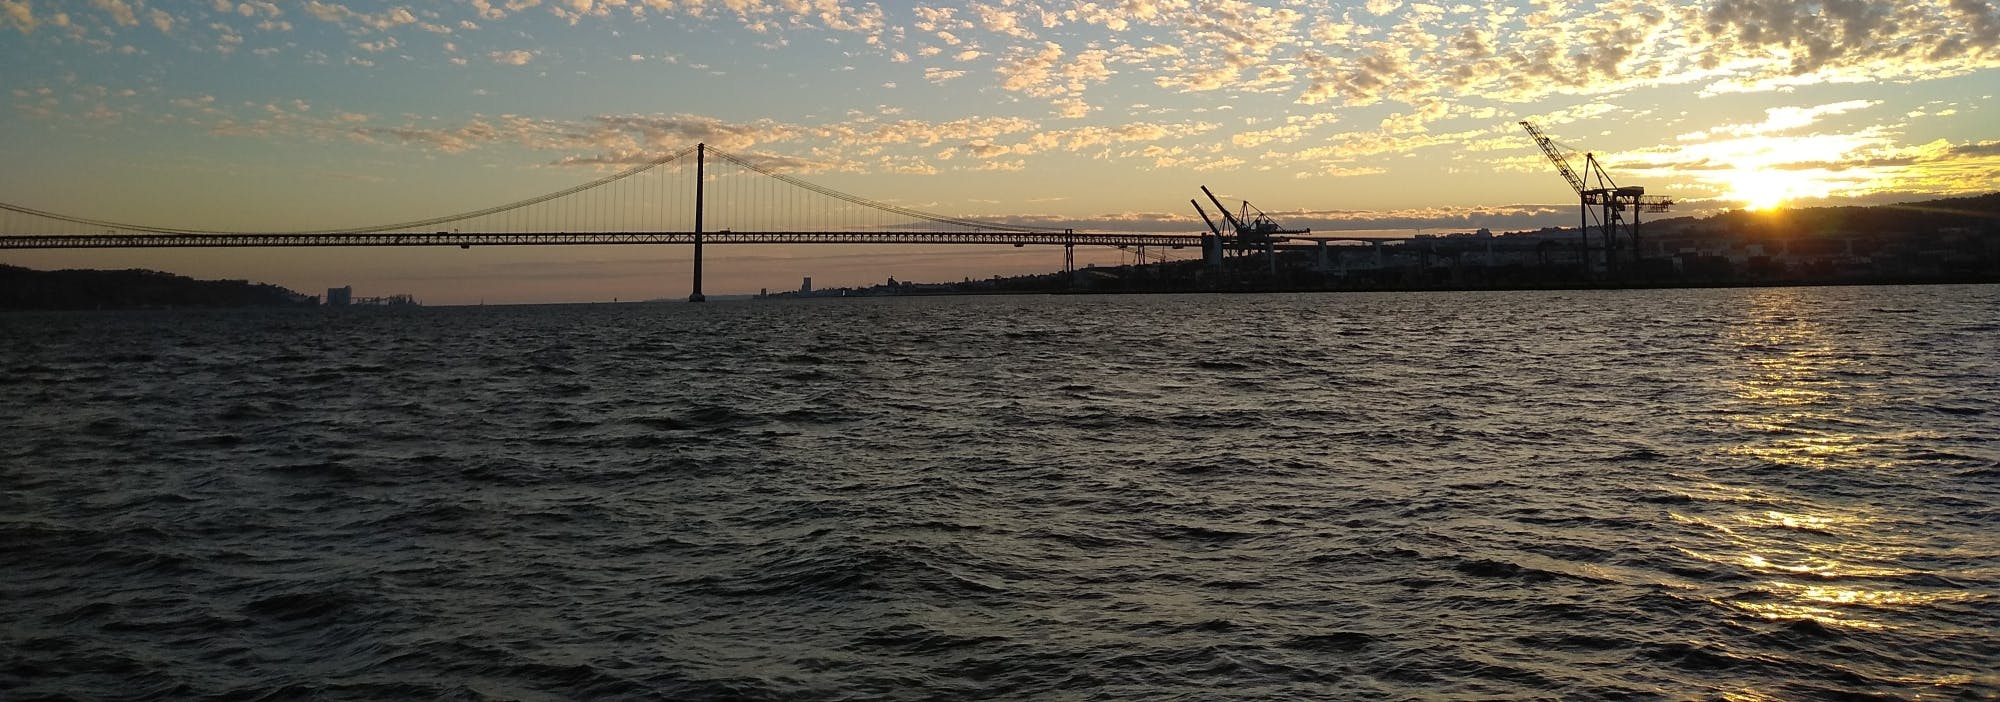 Paseo en barco al atardecer en Lisboa por el estuario del Tajo